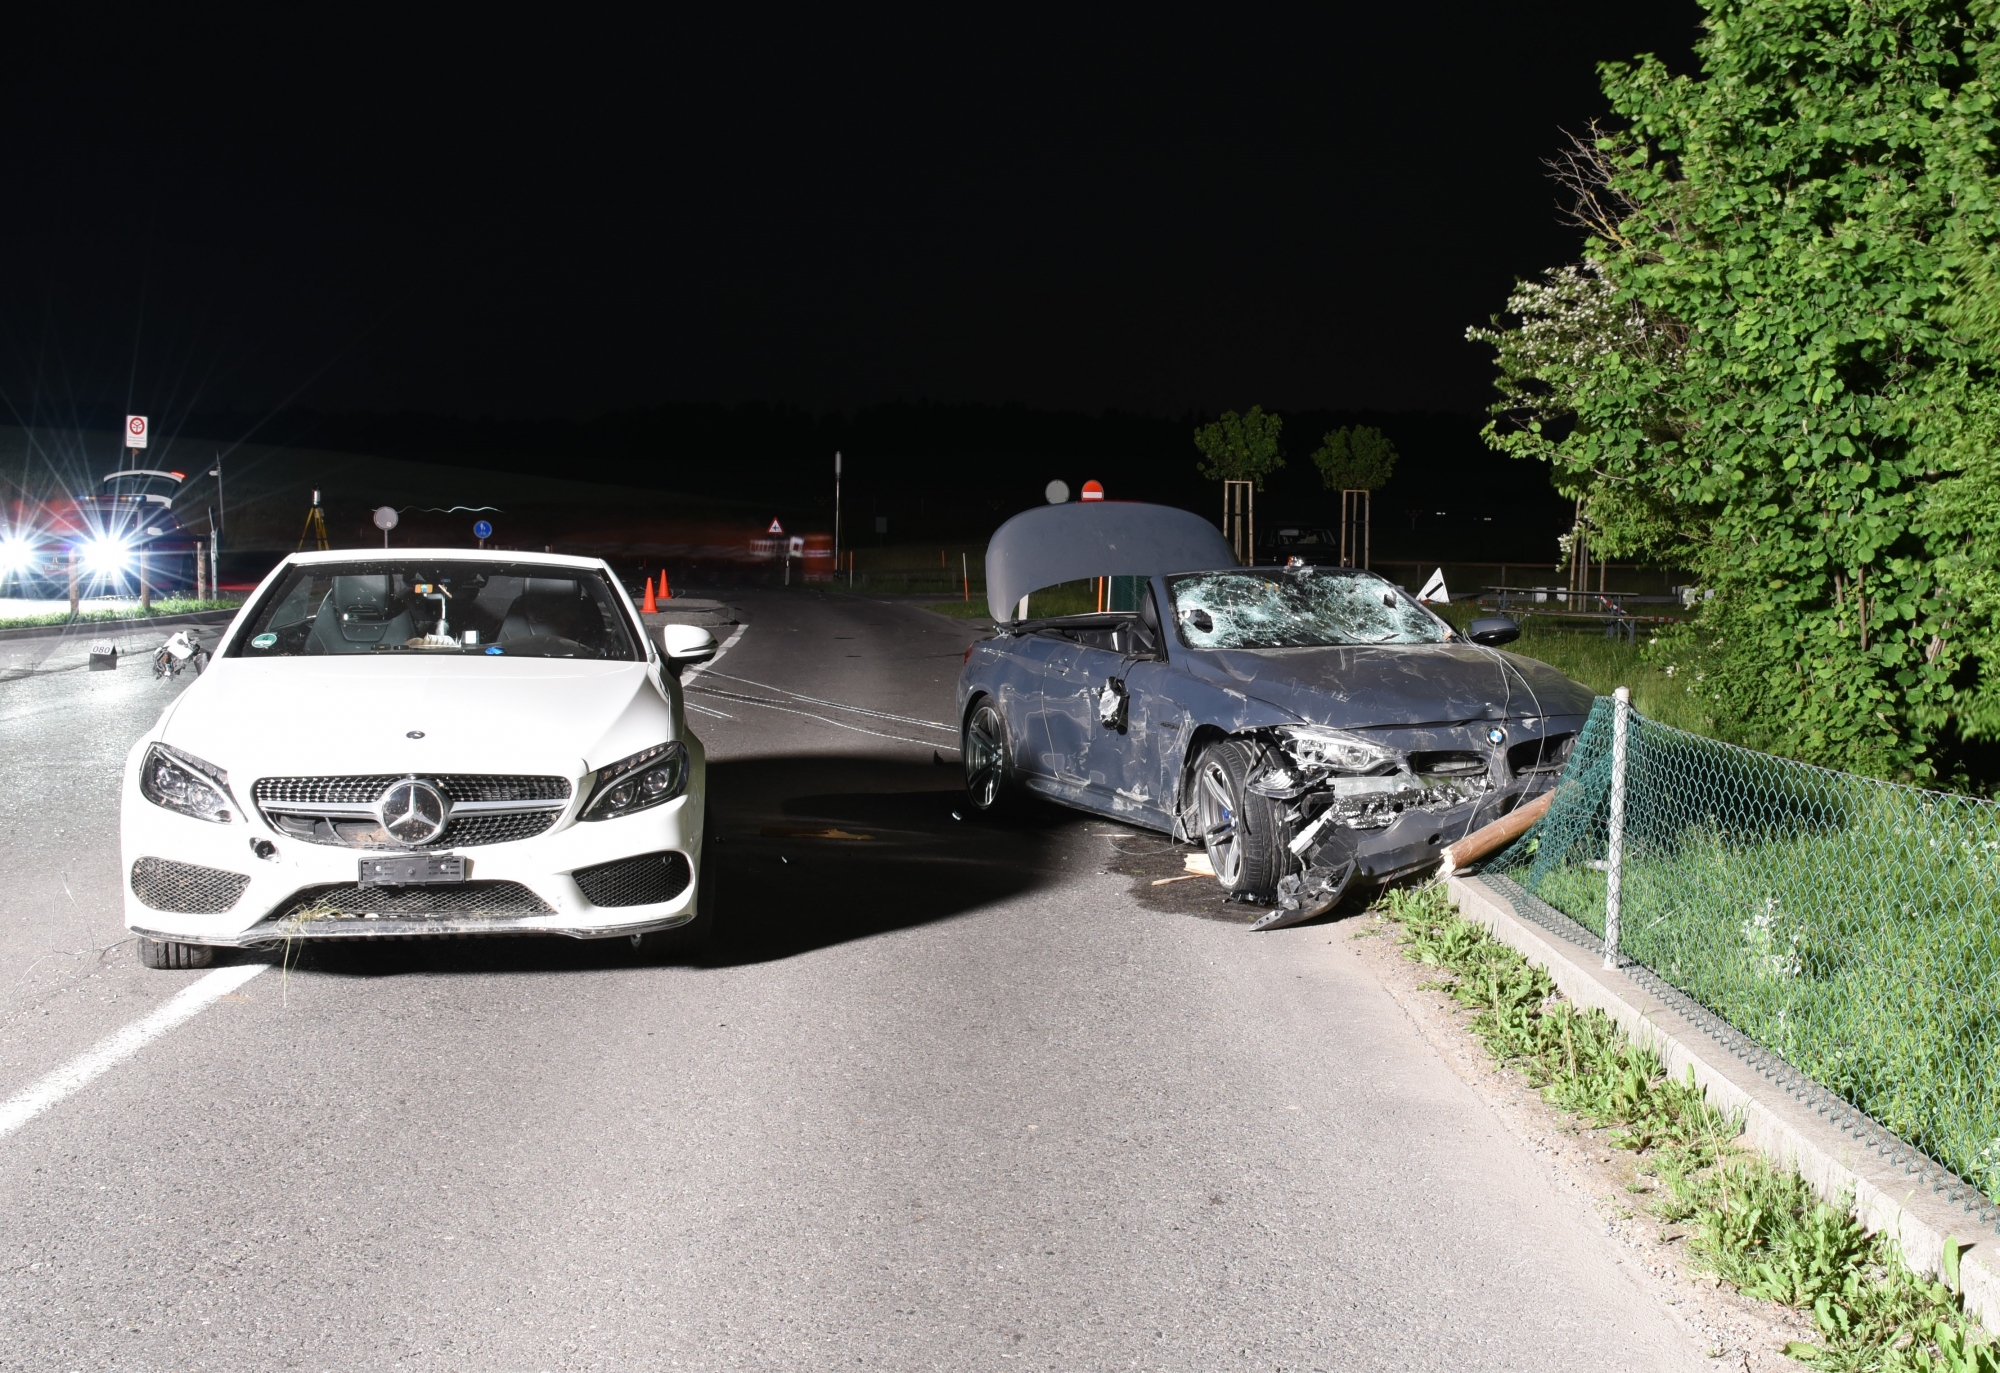 Avant l'accident, plusieurs manœuvres de dépassement ont eu lieu entre le cabriolet Mercedes blanc et le BMW cabriolet grise.